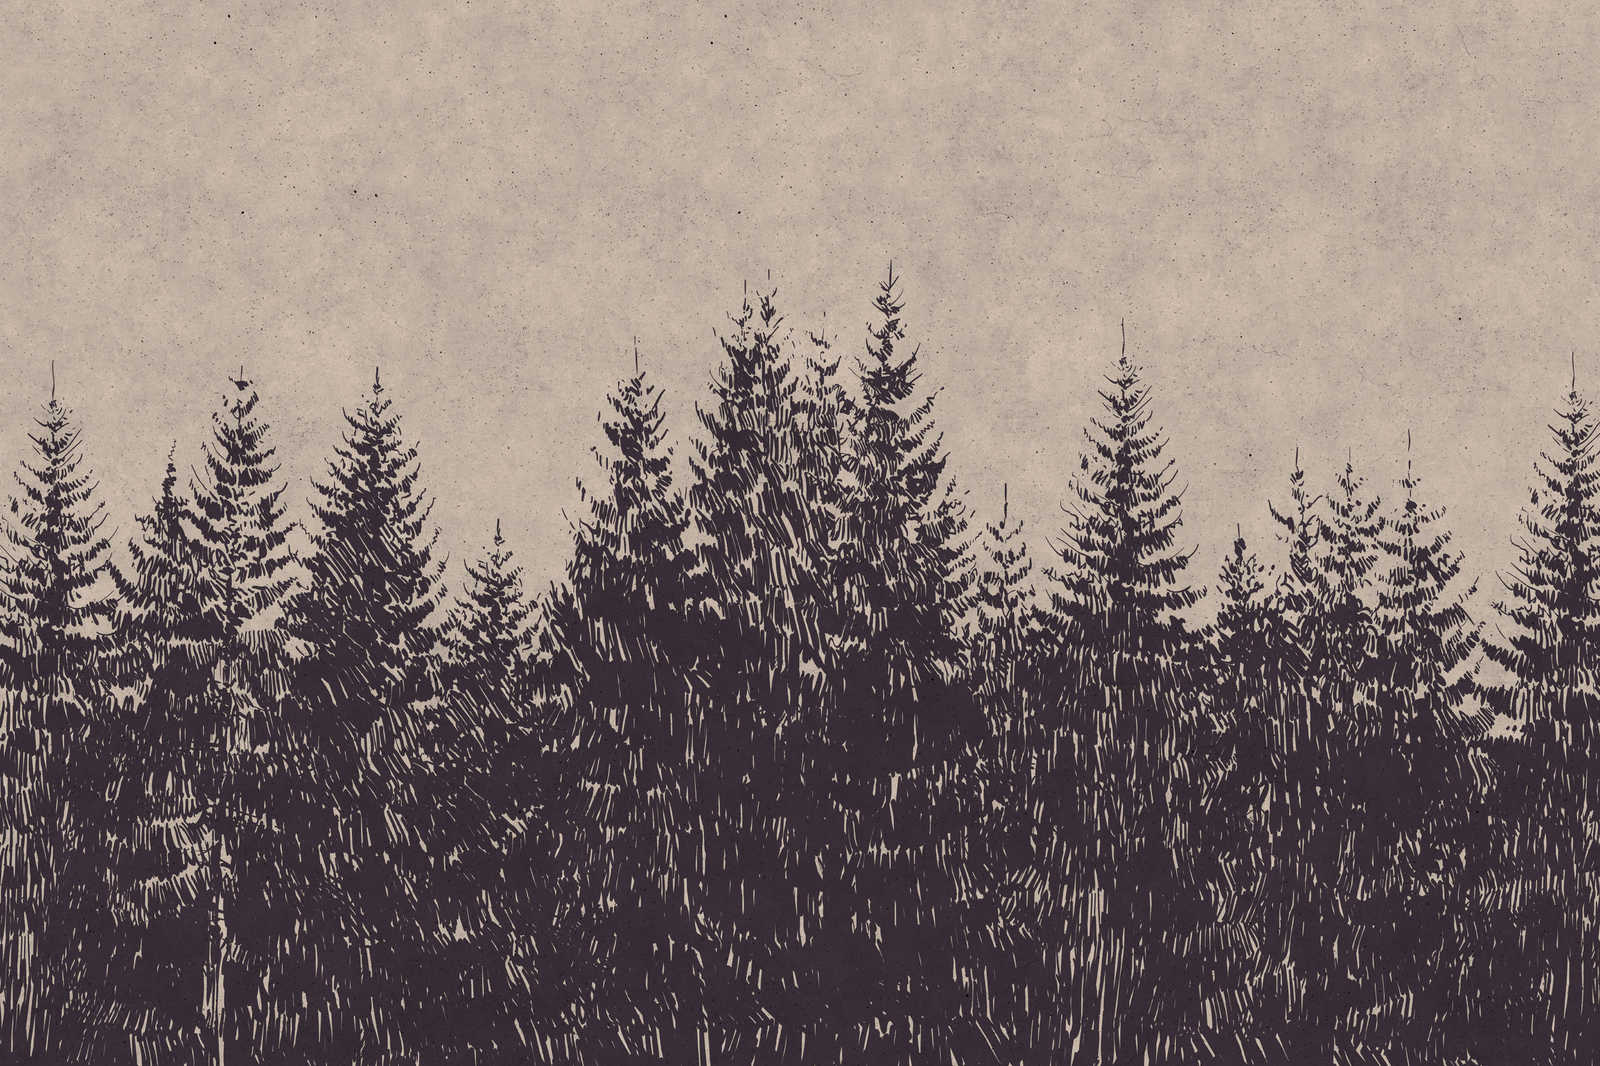             Leinwandbild Wald Tannen im Zeichenstil – 0,90 m x 0,60 m
        